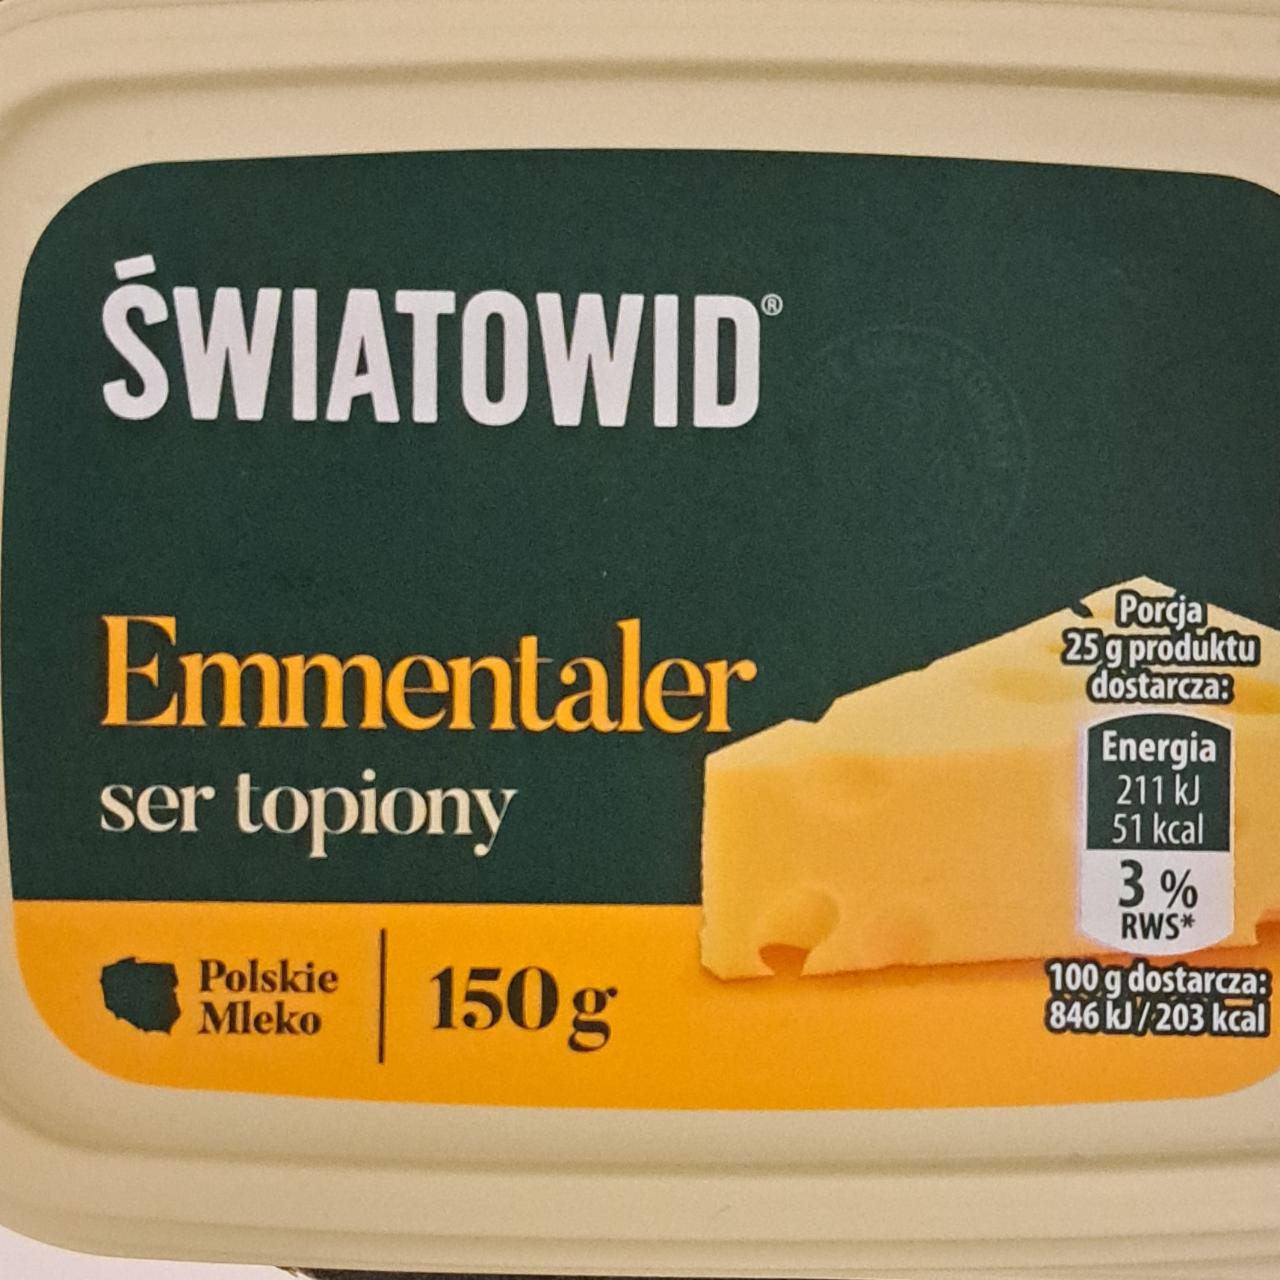 Zdjęcia - Emmentaler ser topiony Światowid